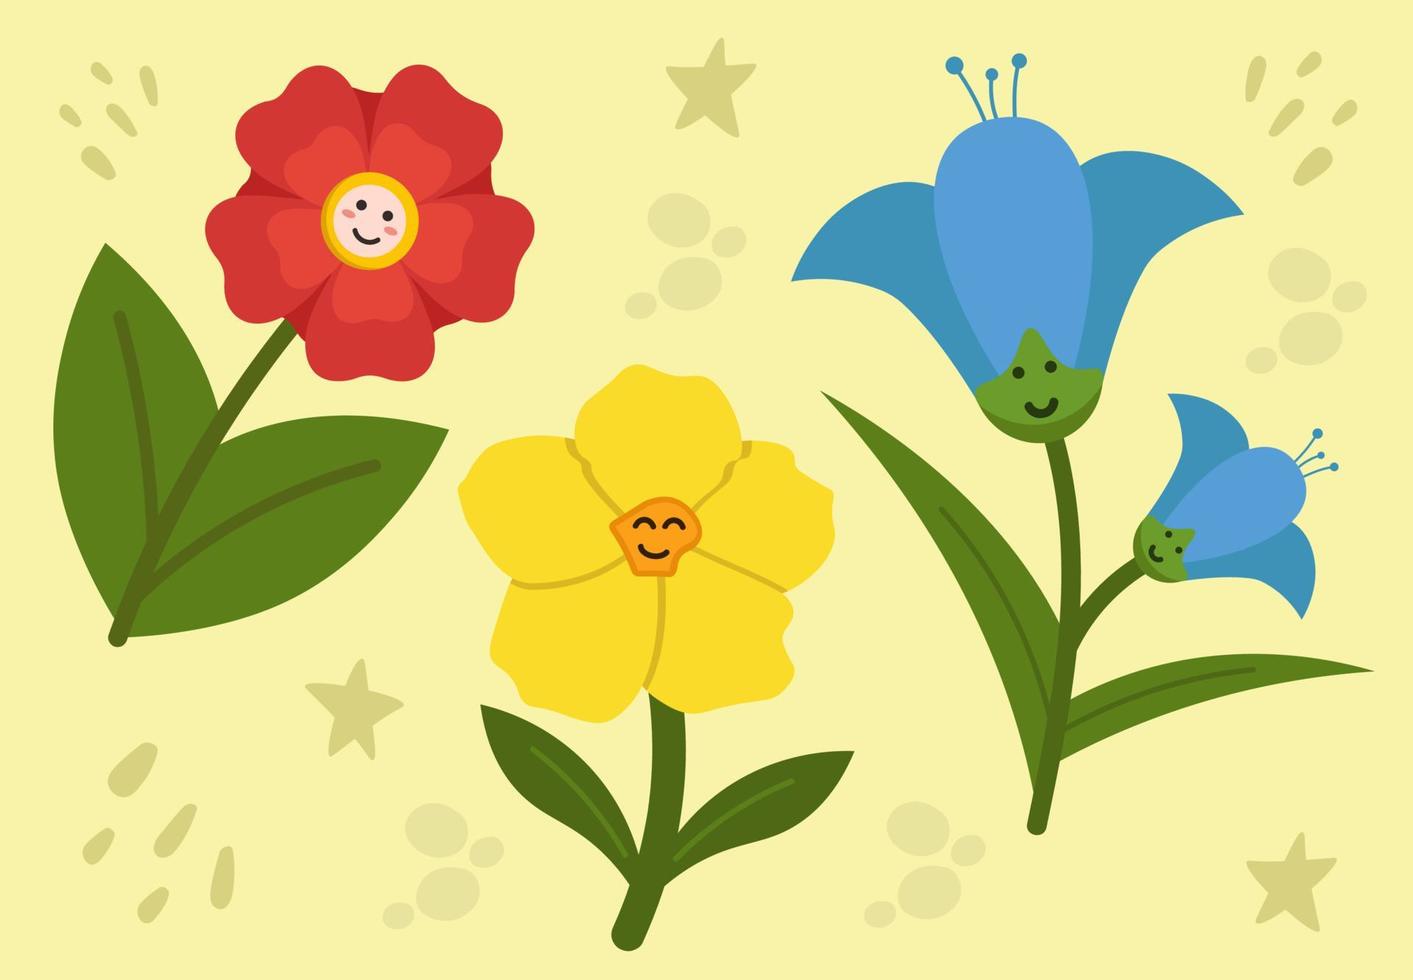 verzameling van gelukkig bloemen met gezichten kleurrijk vector illustratie in vlak stijl